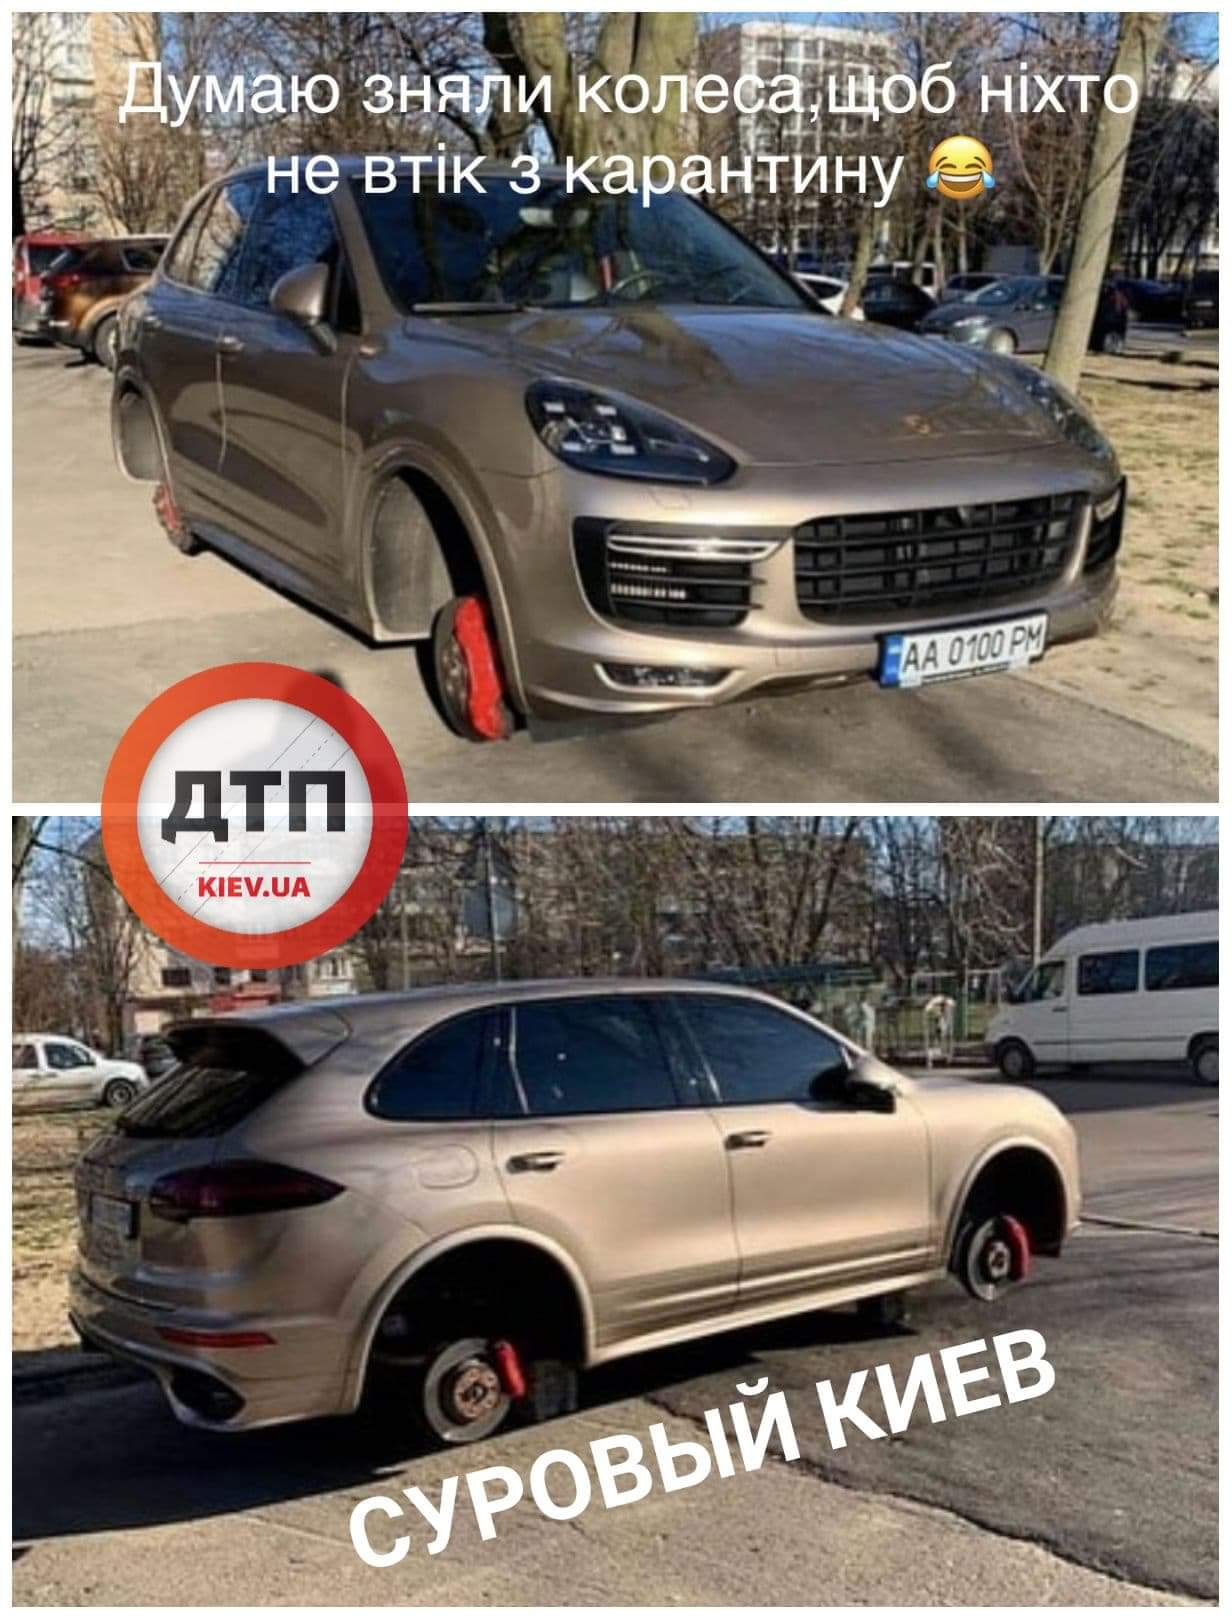 В Киеве за ночь украли колёса с Porsche